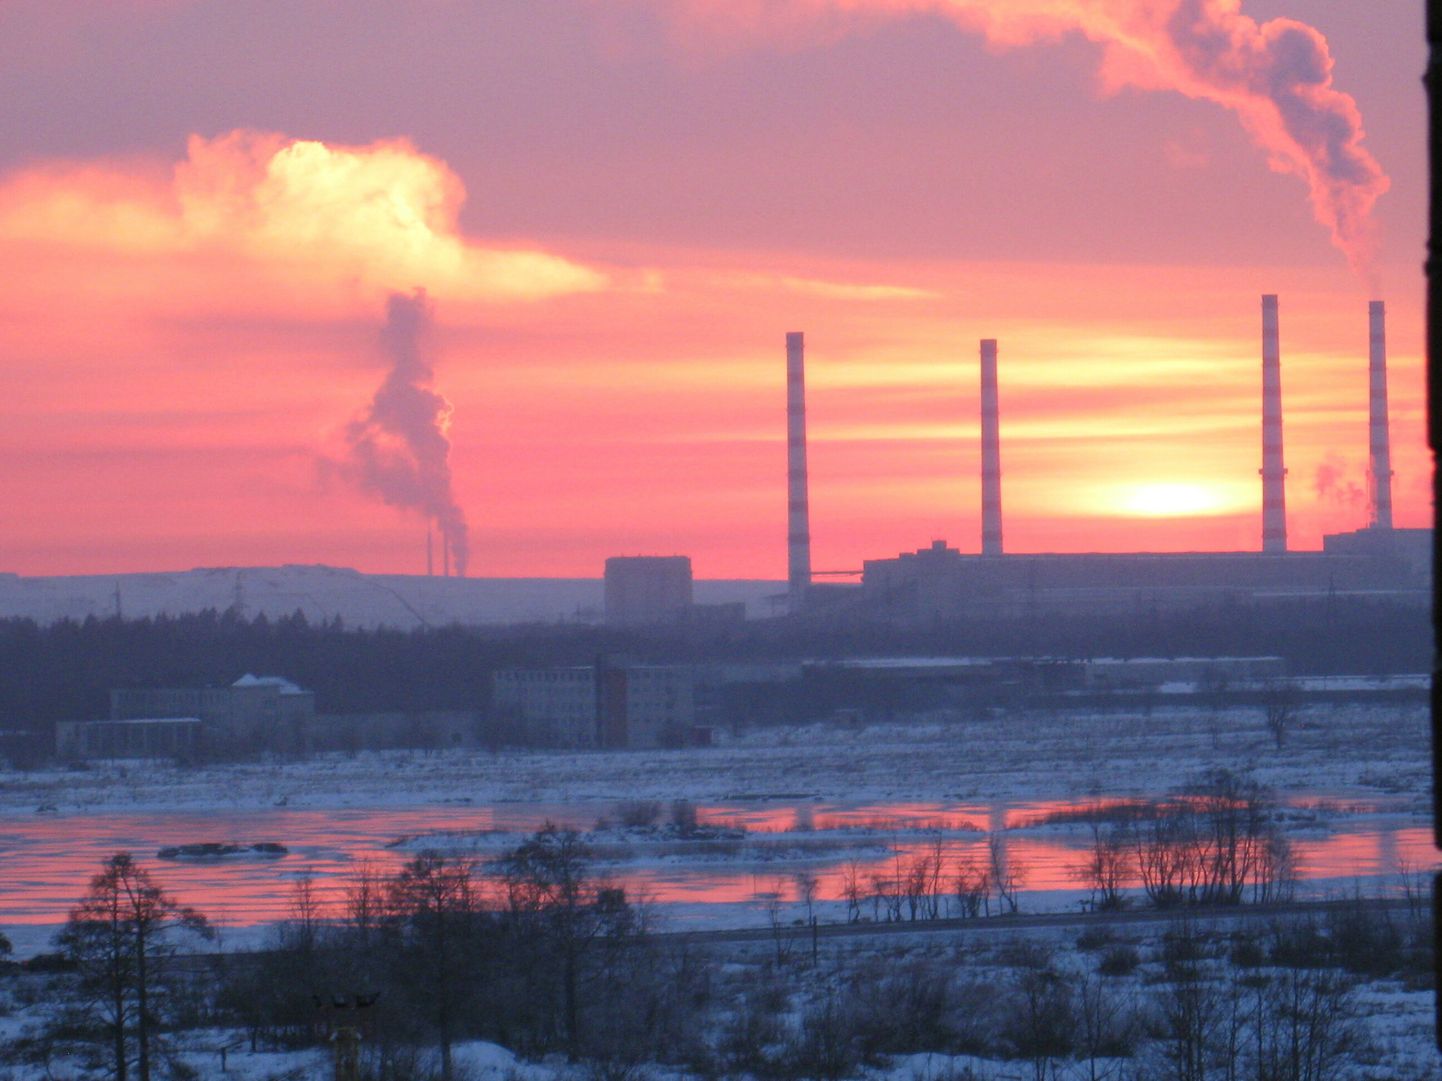 Закат над Нарвскими электростанциями (2009)
Категория "Электростанции как неотъемлемая часть Нарвы"